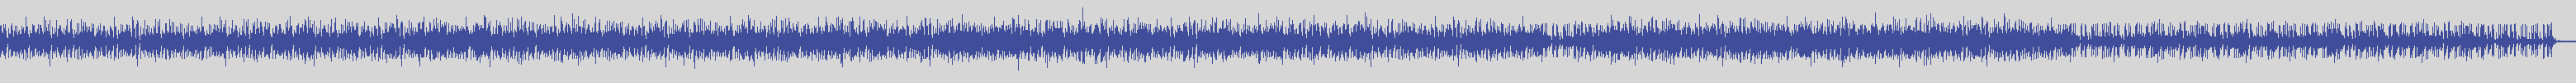 noclouds_chillout [NOC143] W Ensemble - Contento [Original Mix] audio wave form